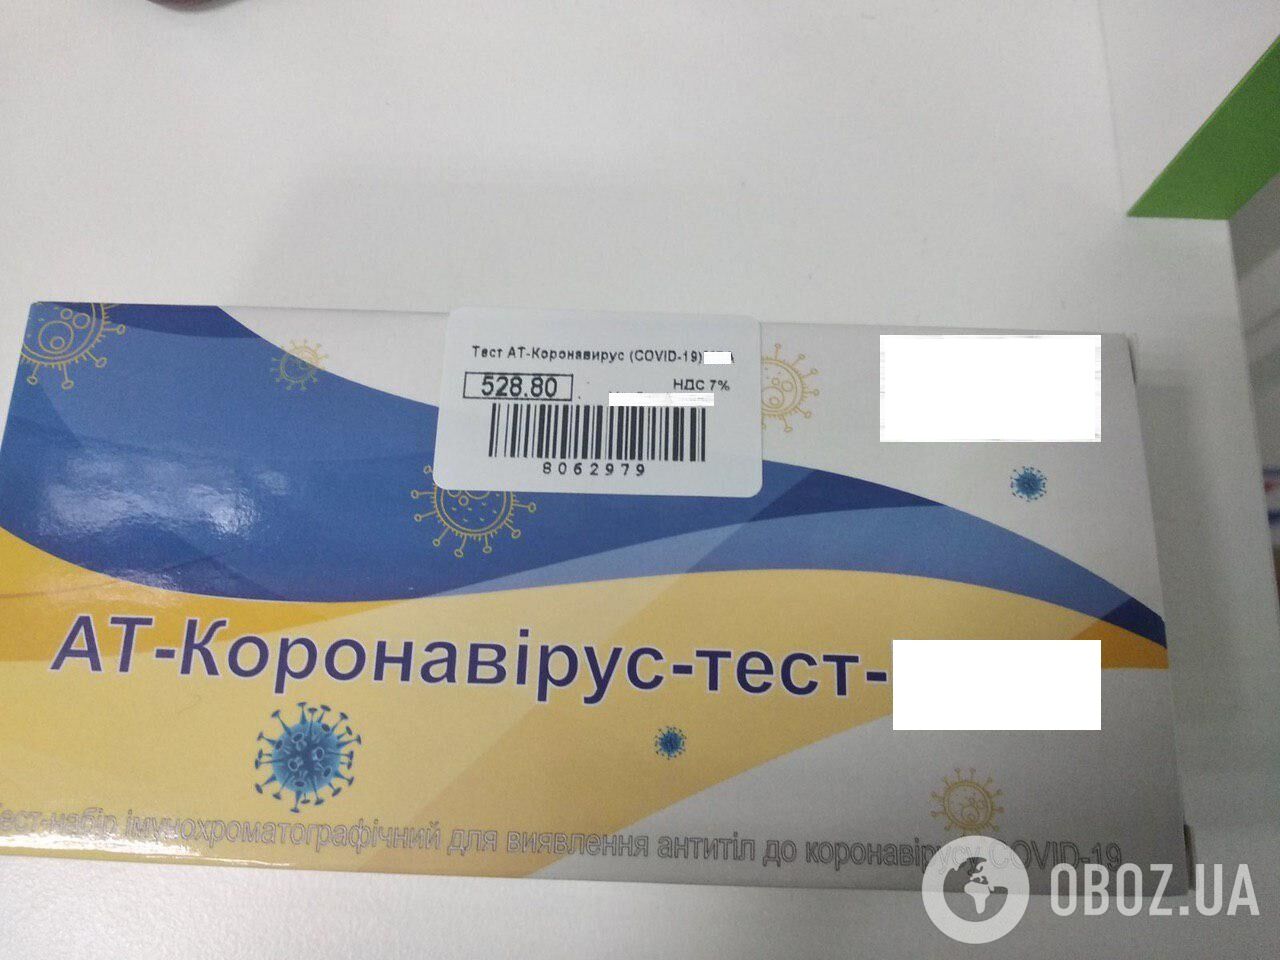 Купити експрестест на коронавірус в українських аптеках можна всього за 500-600 грн